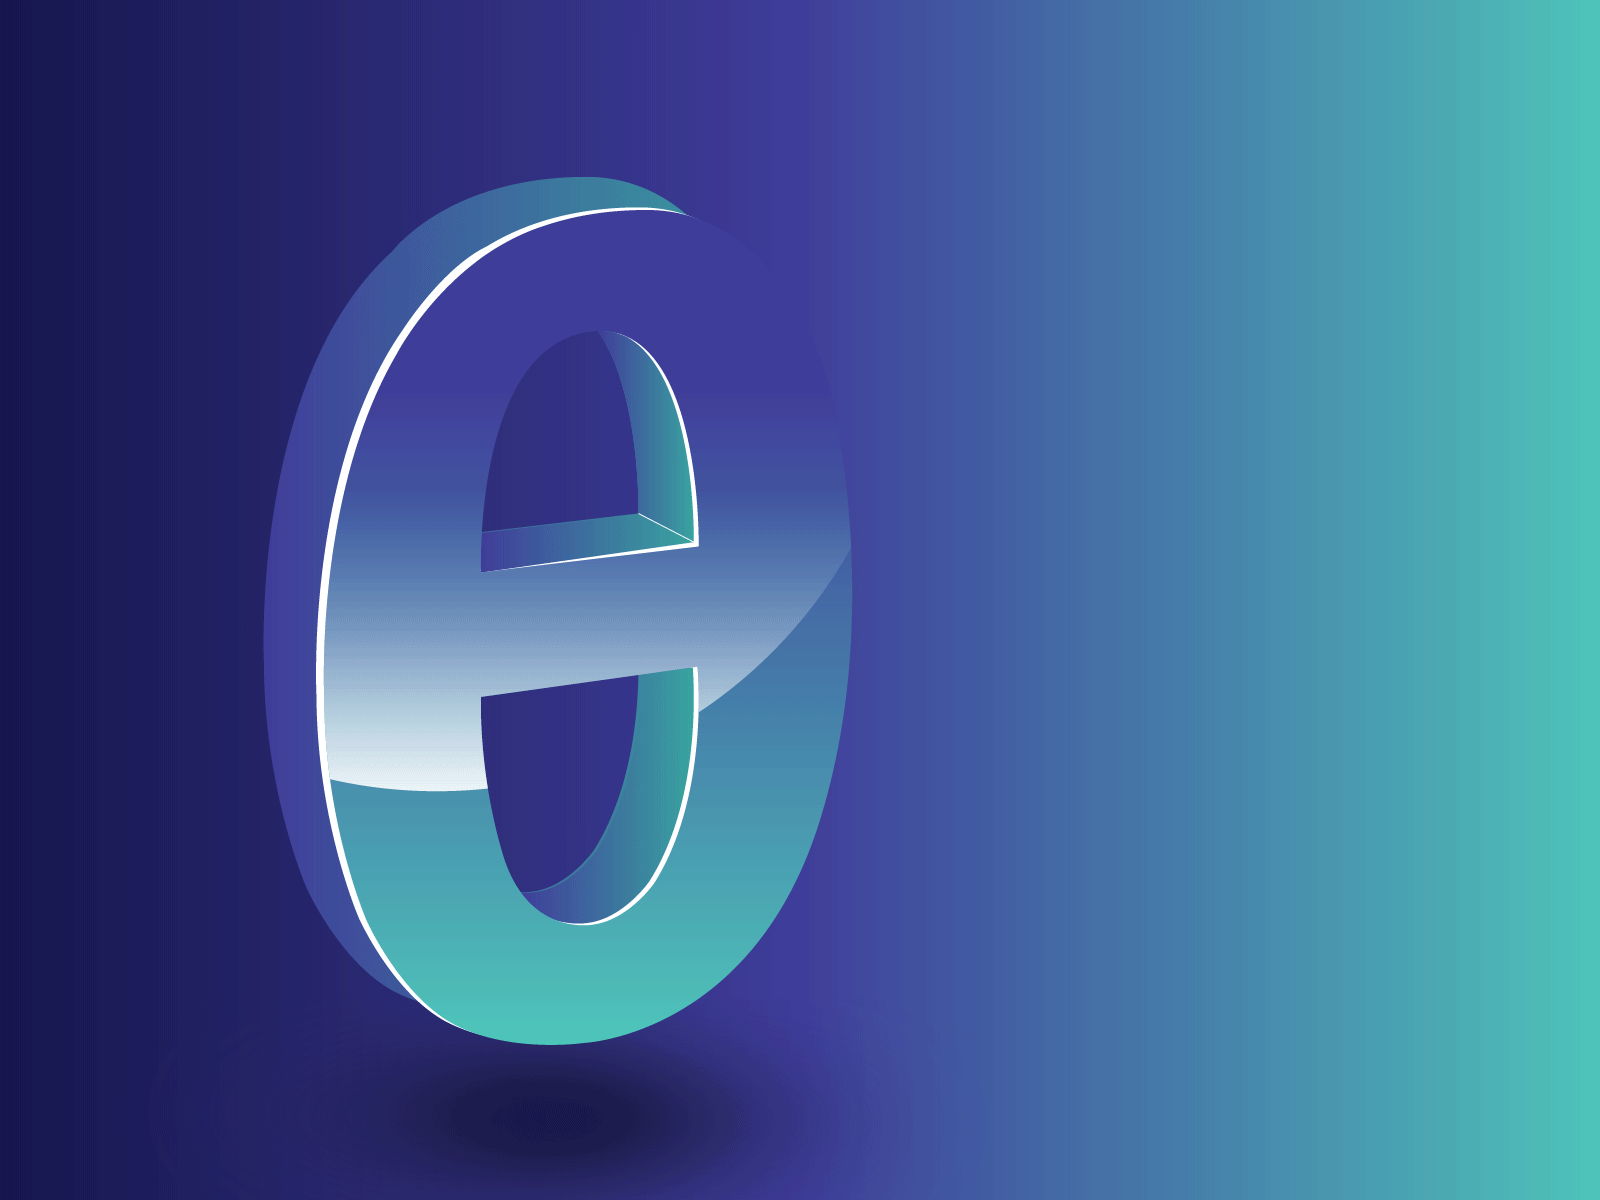 3d-logo-animation-by-designrar-by-israr-khan-on-dribbble